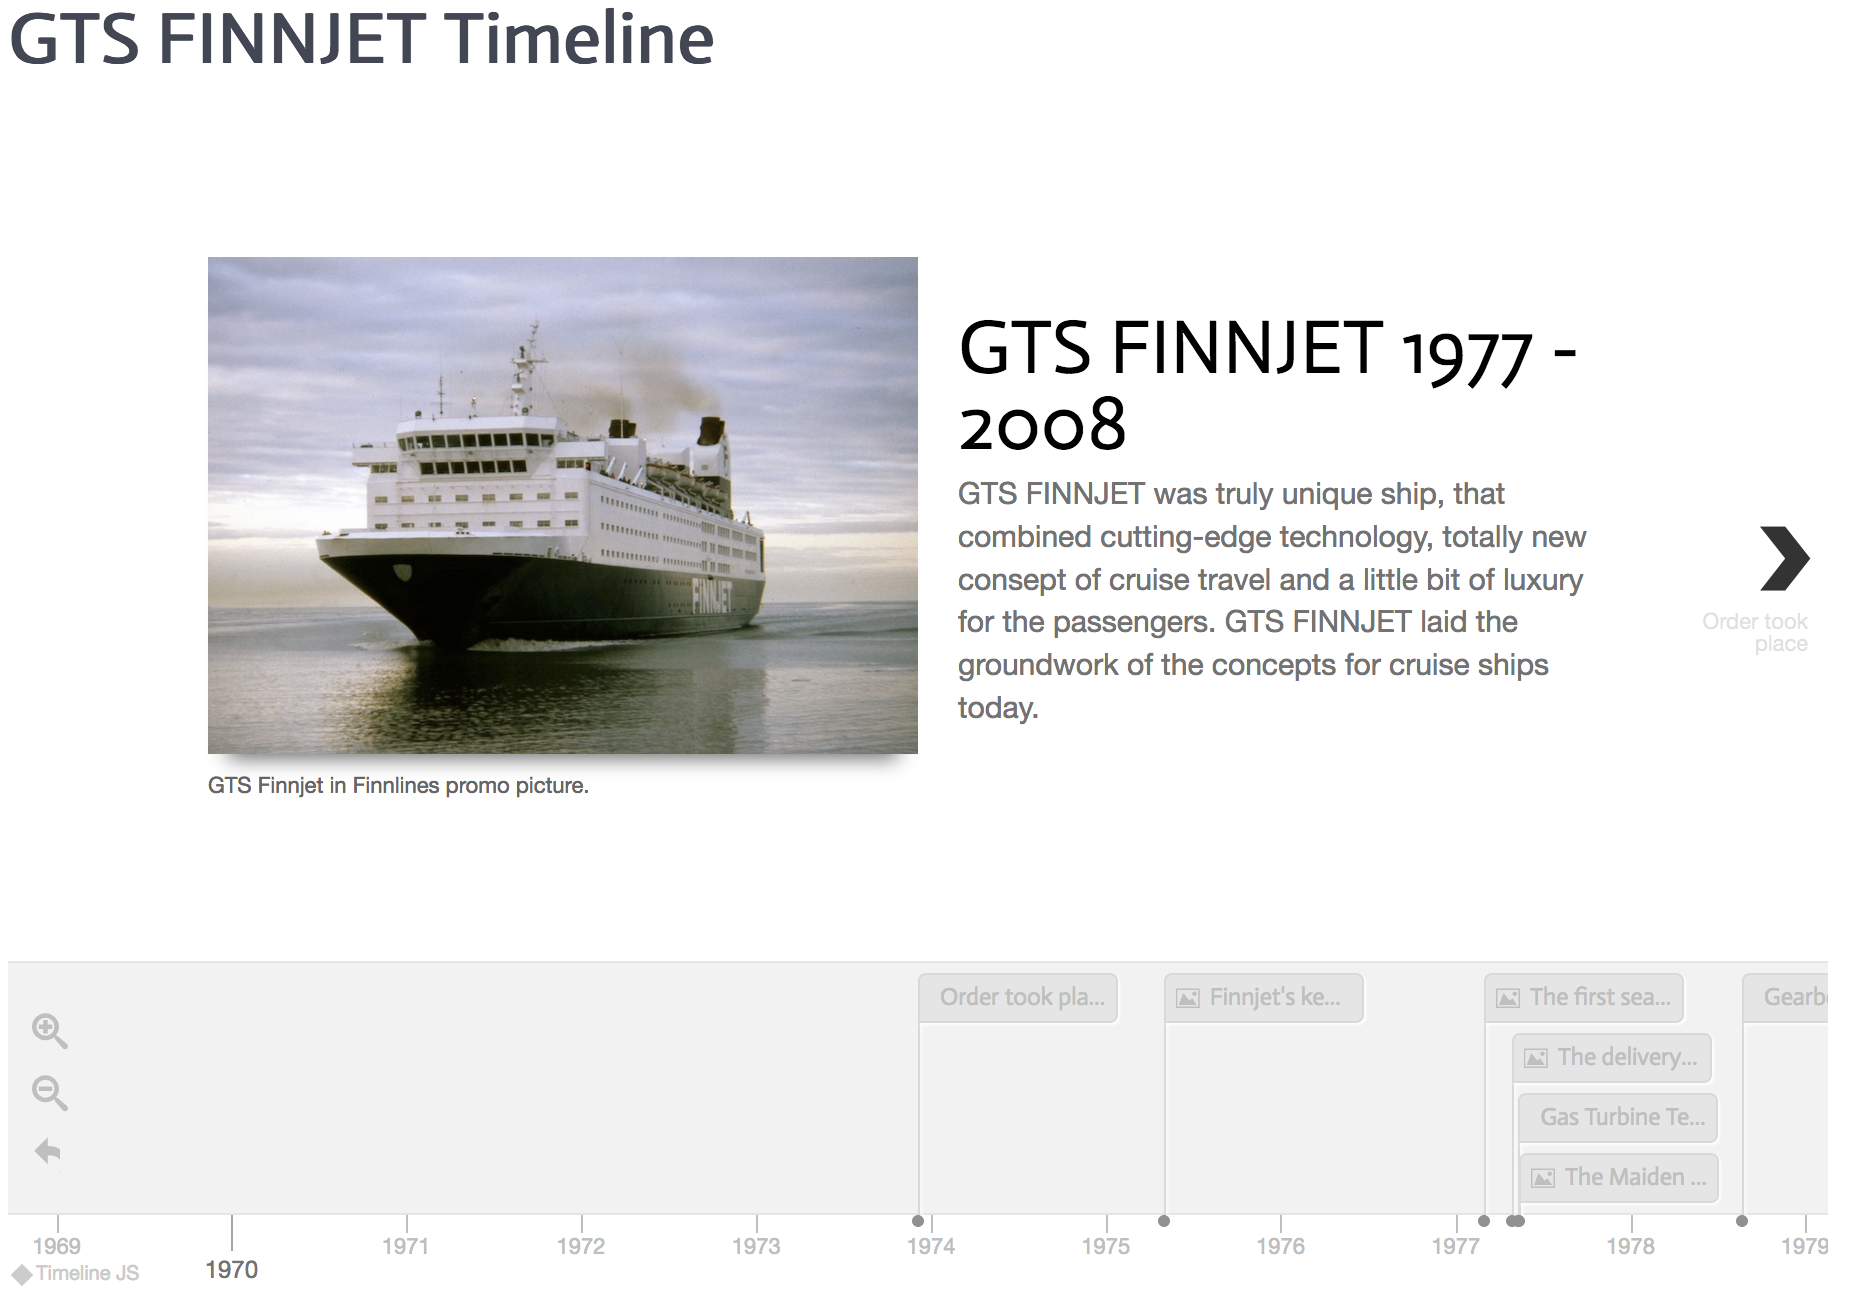 GTS Finnjet Timeline